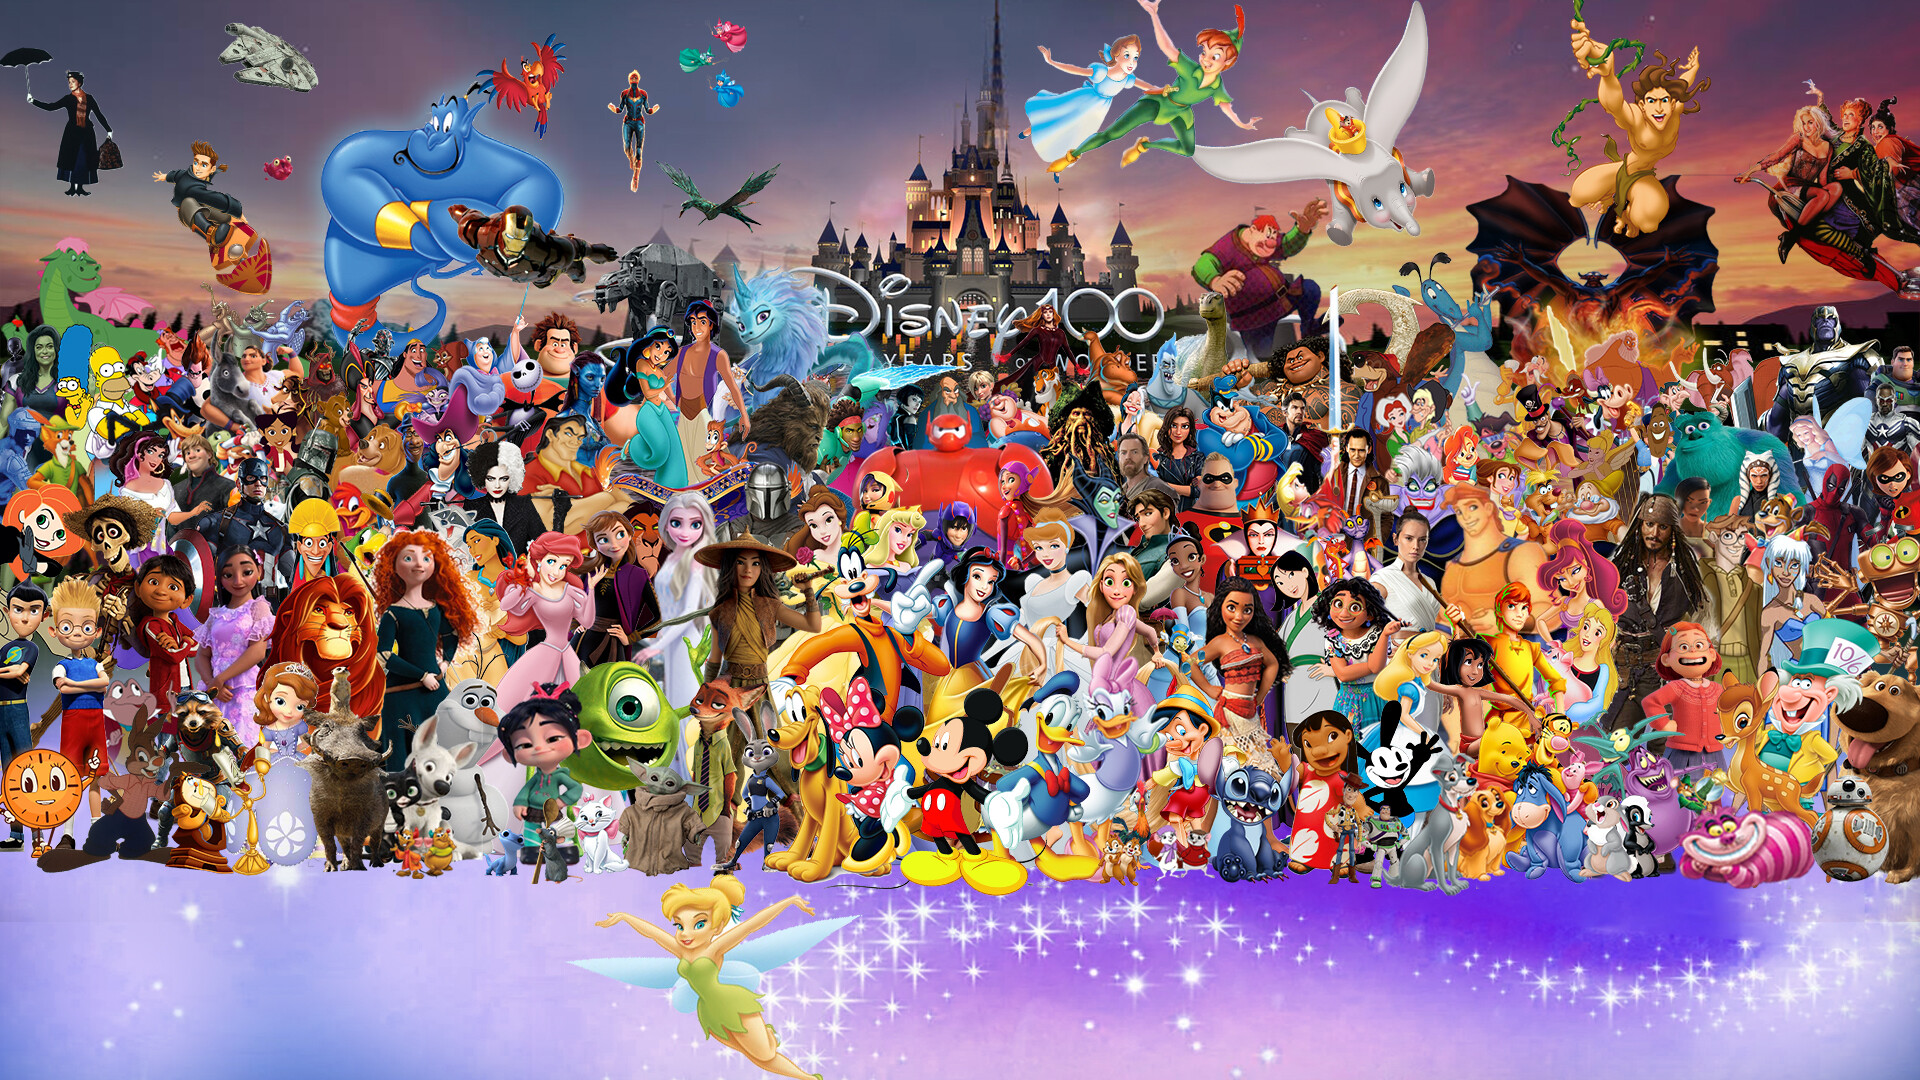 ArtStation - Disney Wallpaper | Disney 100